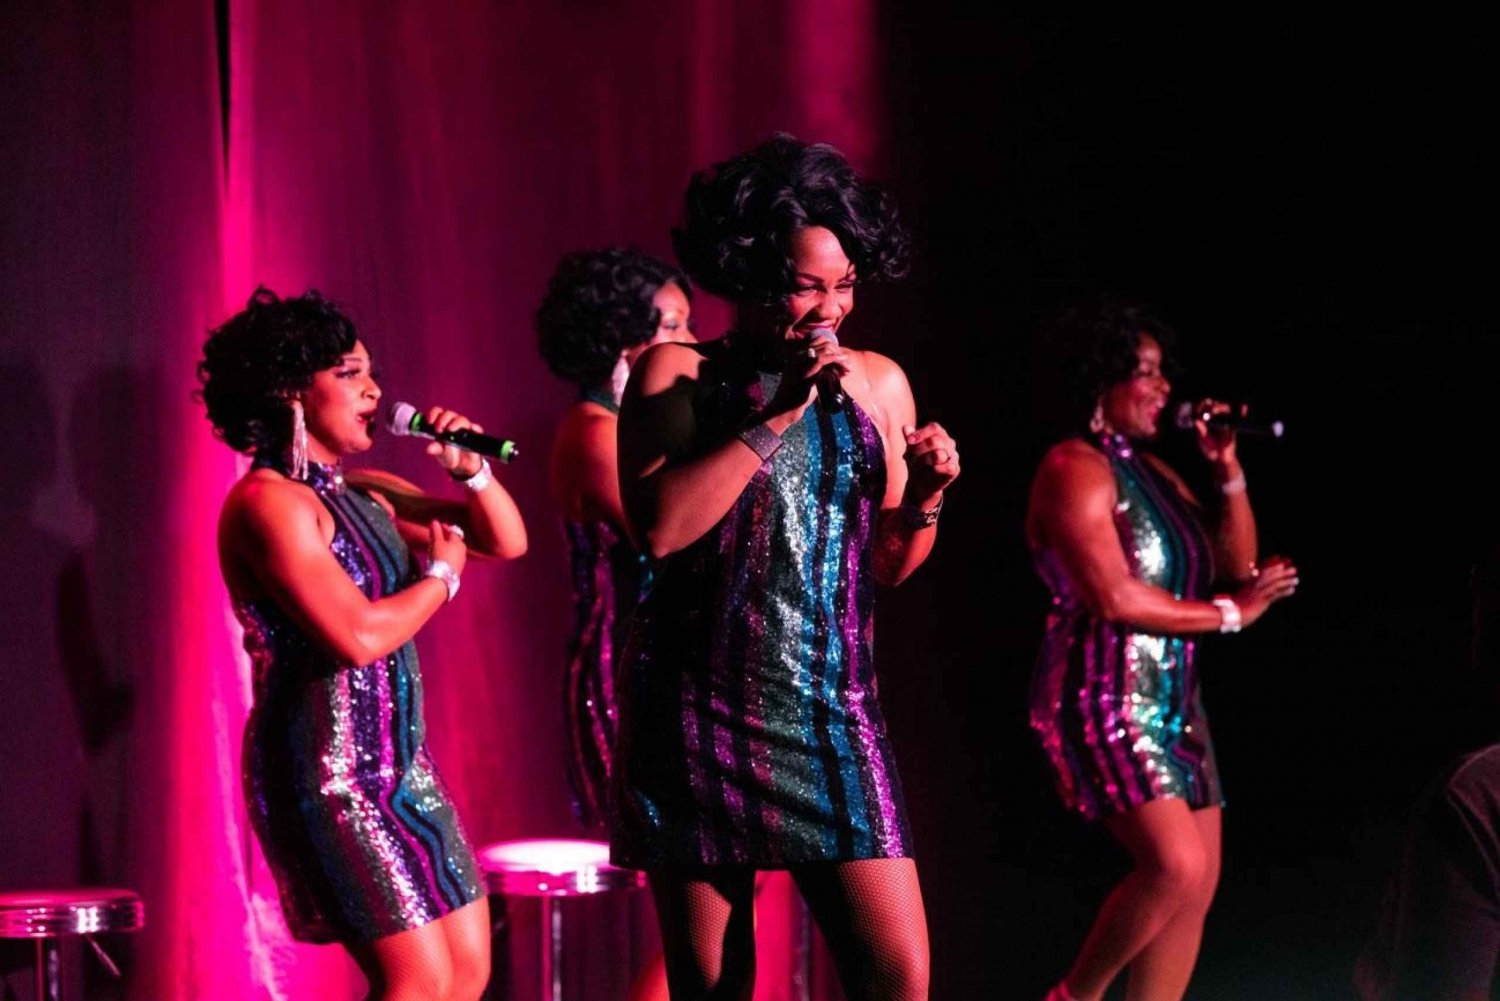 Las Vegasissa: Duchesses of Motownin tähdittämä All Motown Show: All Motown Show